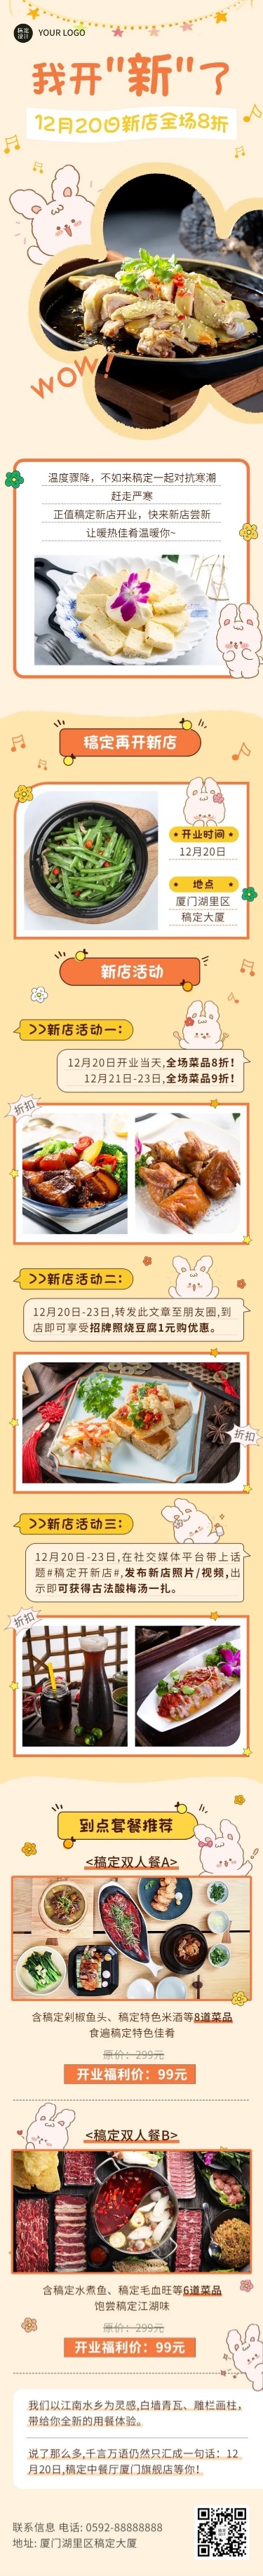 餐饮美食中餐厅新店开业文章长图